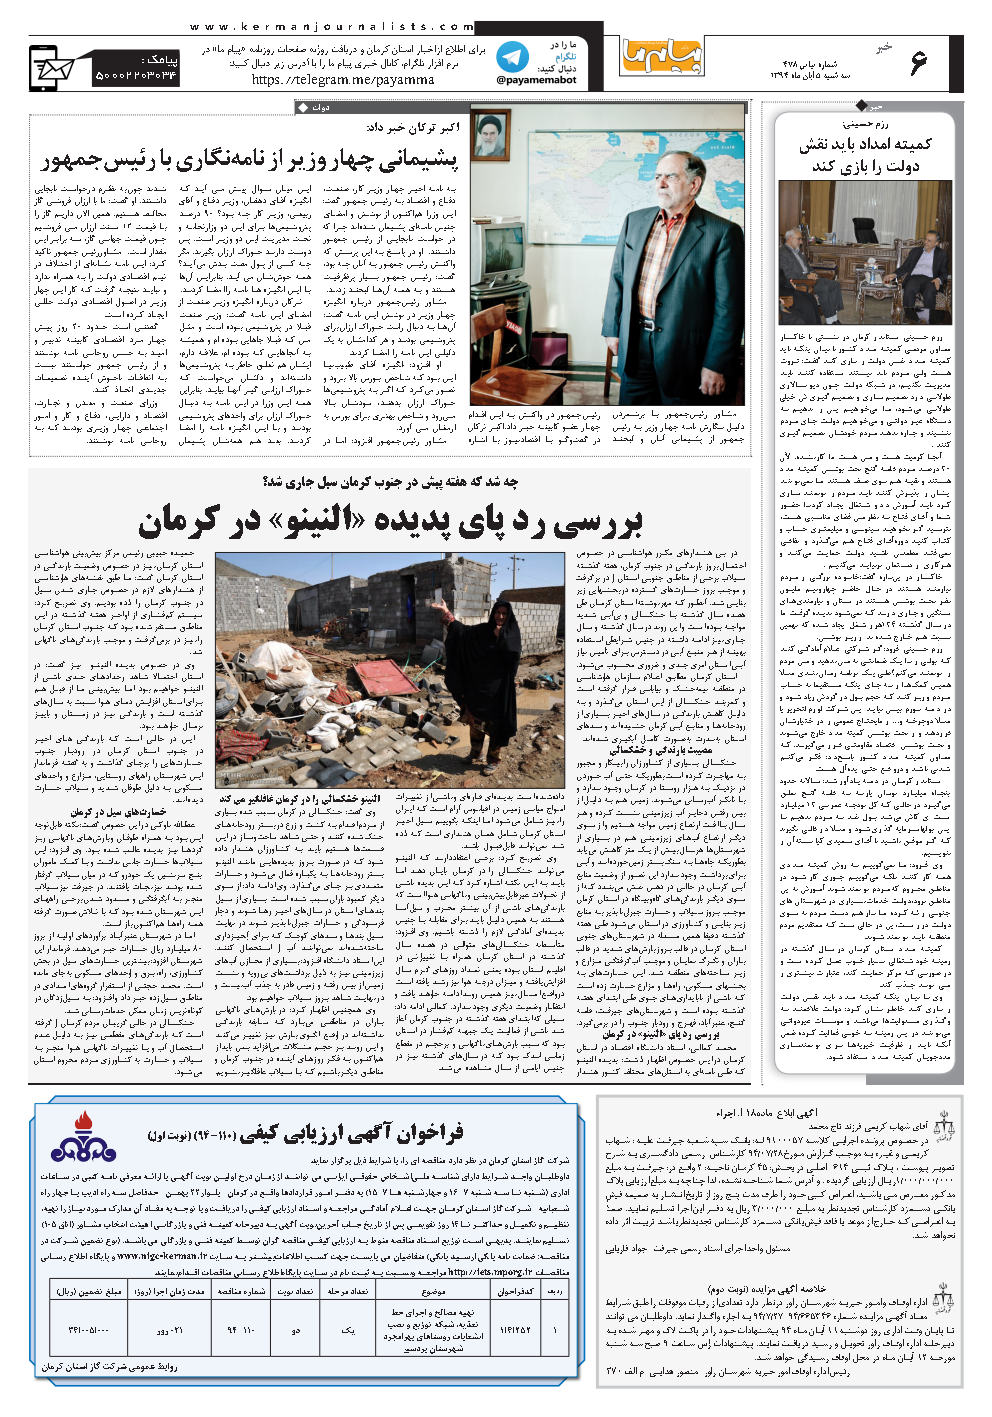 صفحه خبر شماره شماره ۴۷۸ روزنامه پیام ما